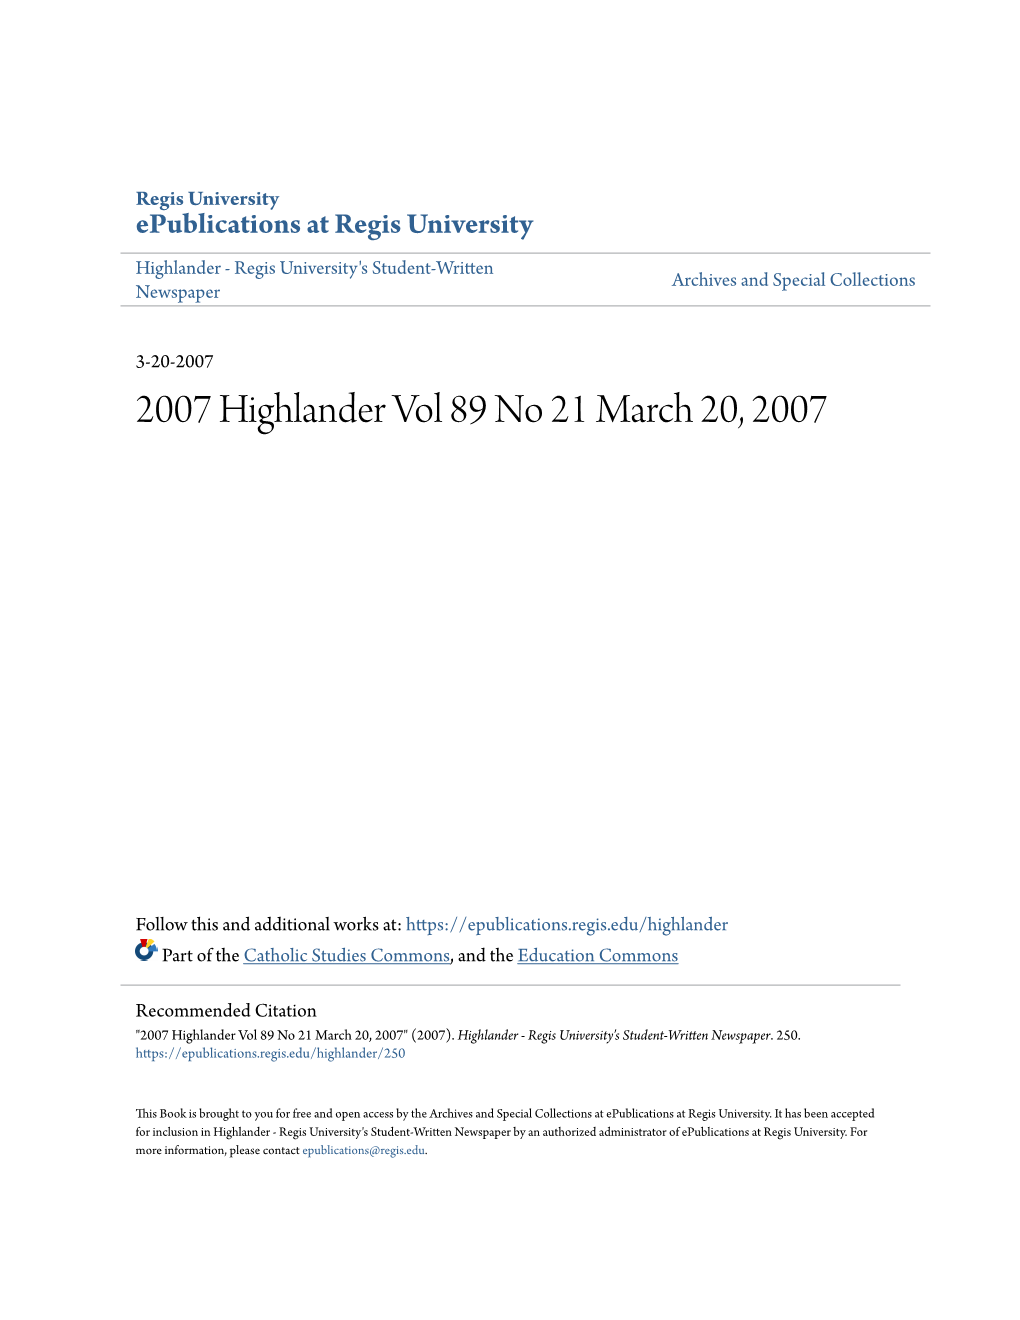 2007 Highlander Vol 89 No 21 March 20, 2007